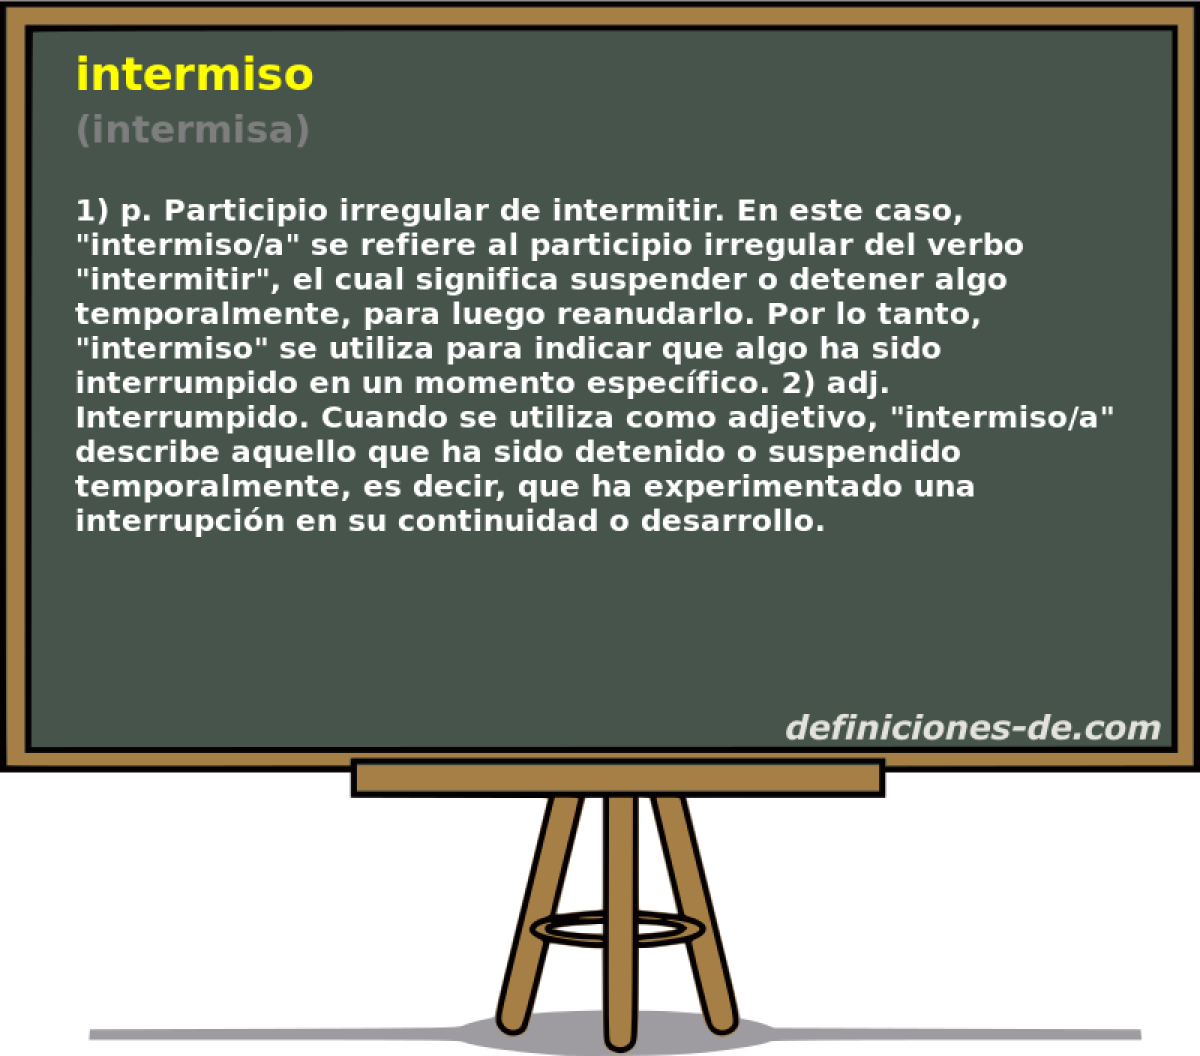 intermiso (intermisa)